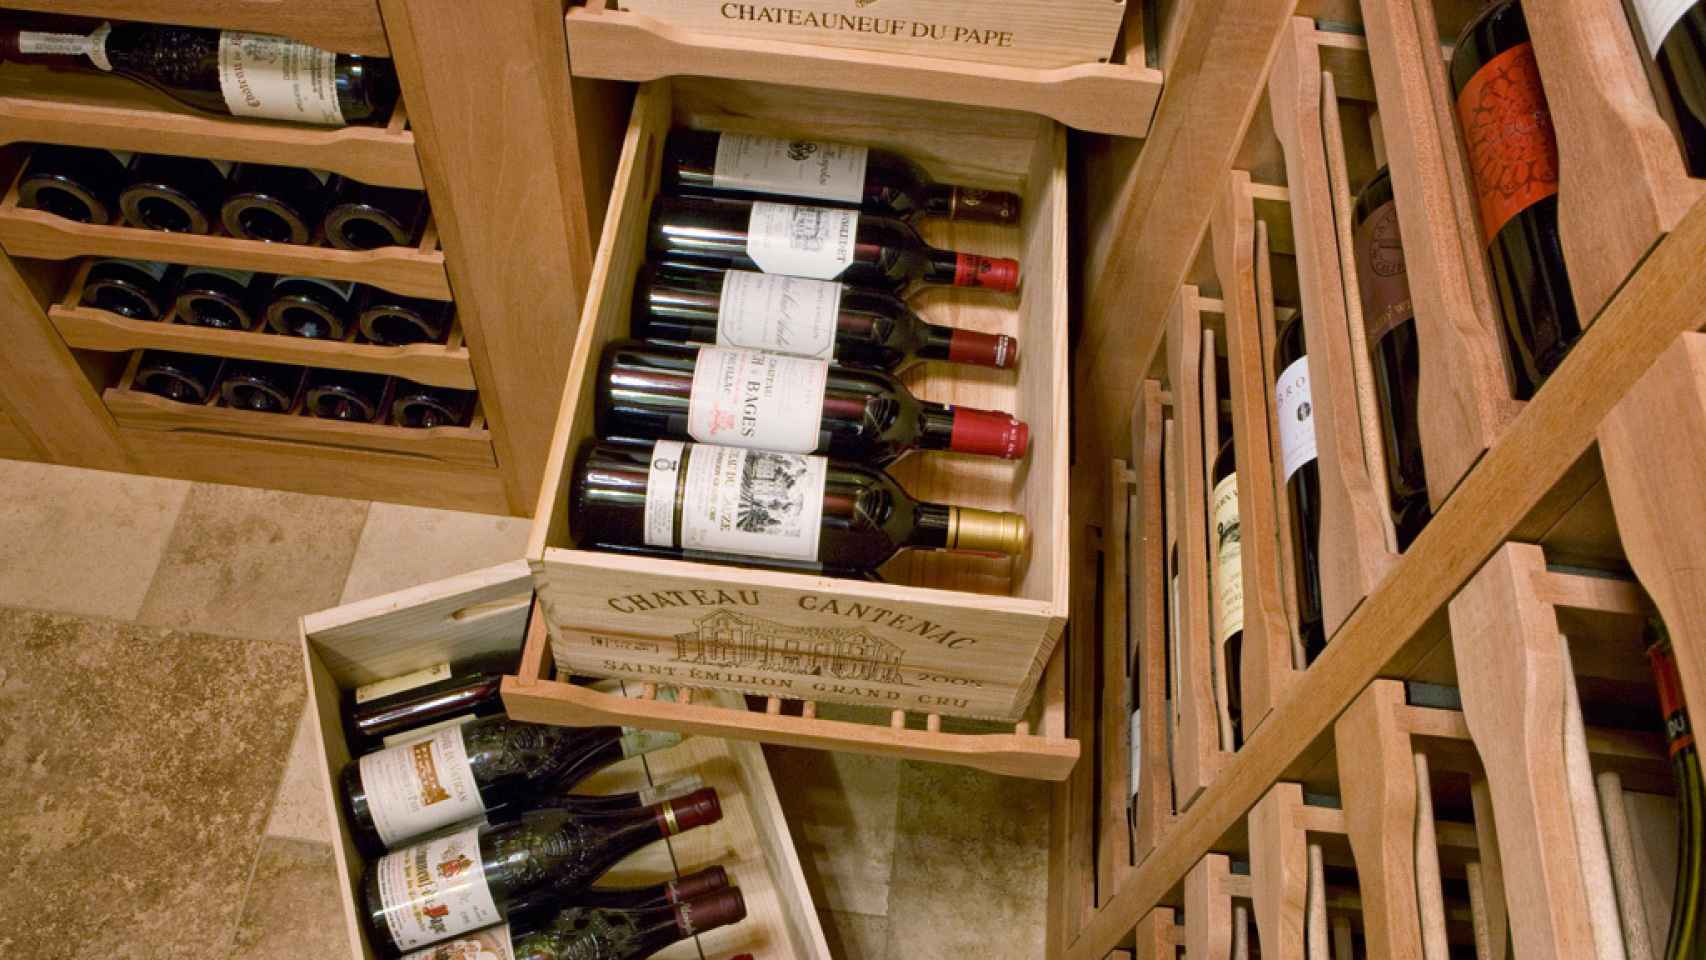 Las cajas de madera pueden servir para almacenar el vino.